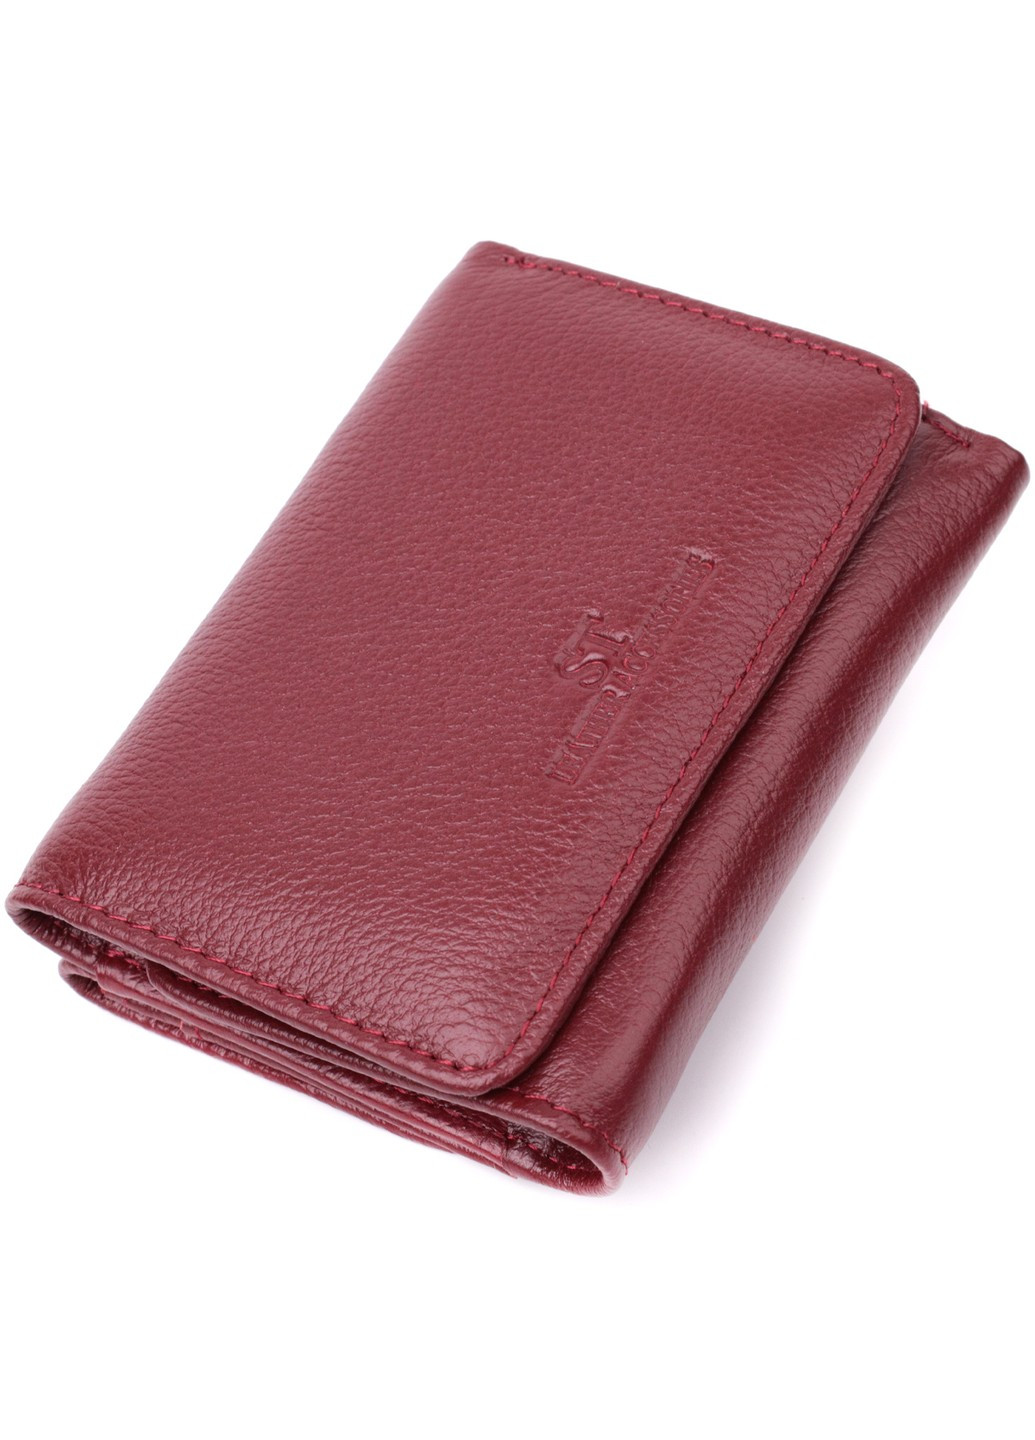 Кожаный интересный кошелек для женщин 22507 Бордовый st leather (278001124)